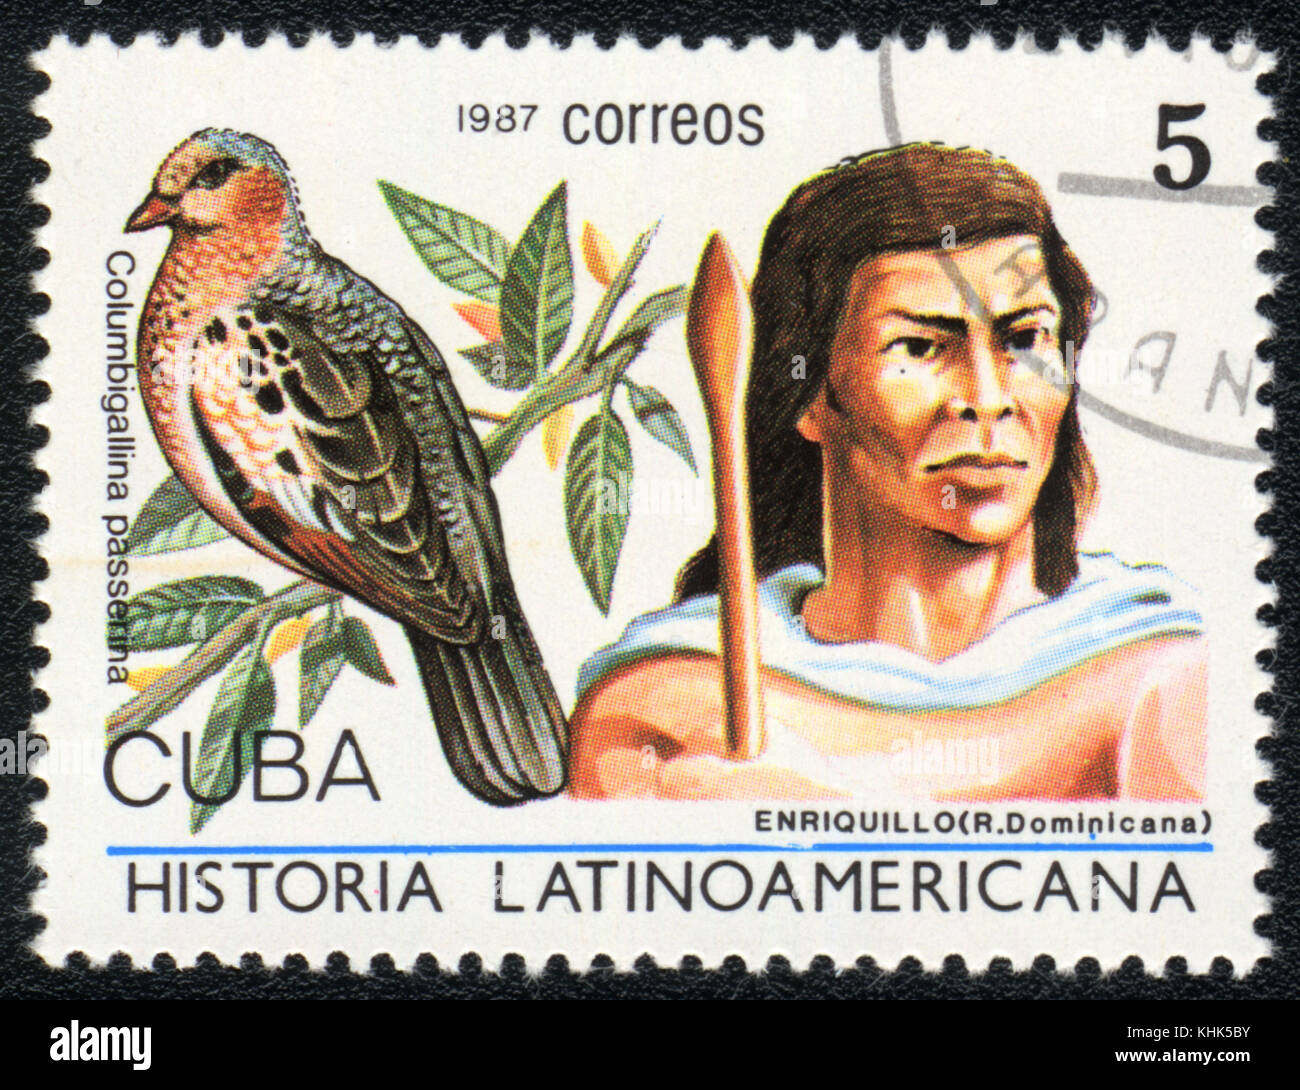 Un timbre-poste imprimé en Cuba montre une image d'Enriquillo (Dominicana) et columbigallina passerina, à partir de la série historia latinoavericana, vers 19 Banque D'Images